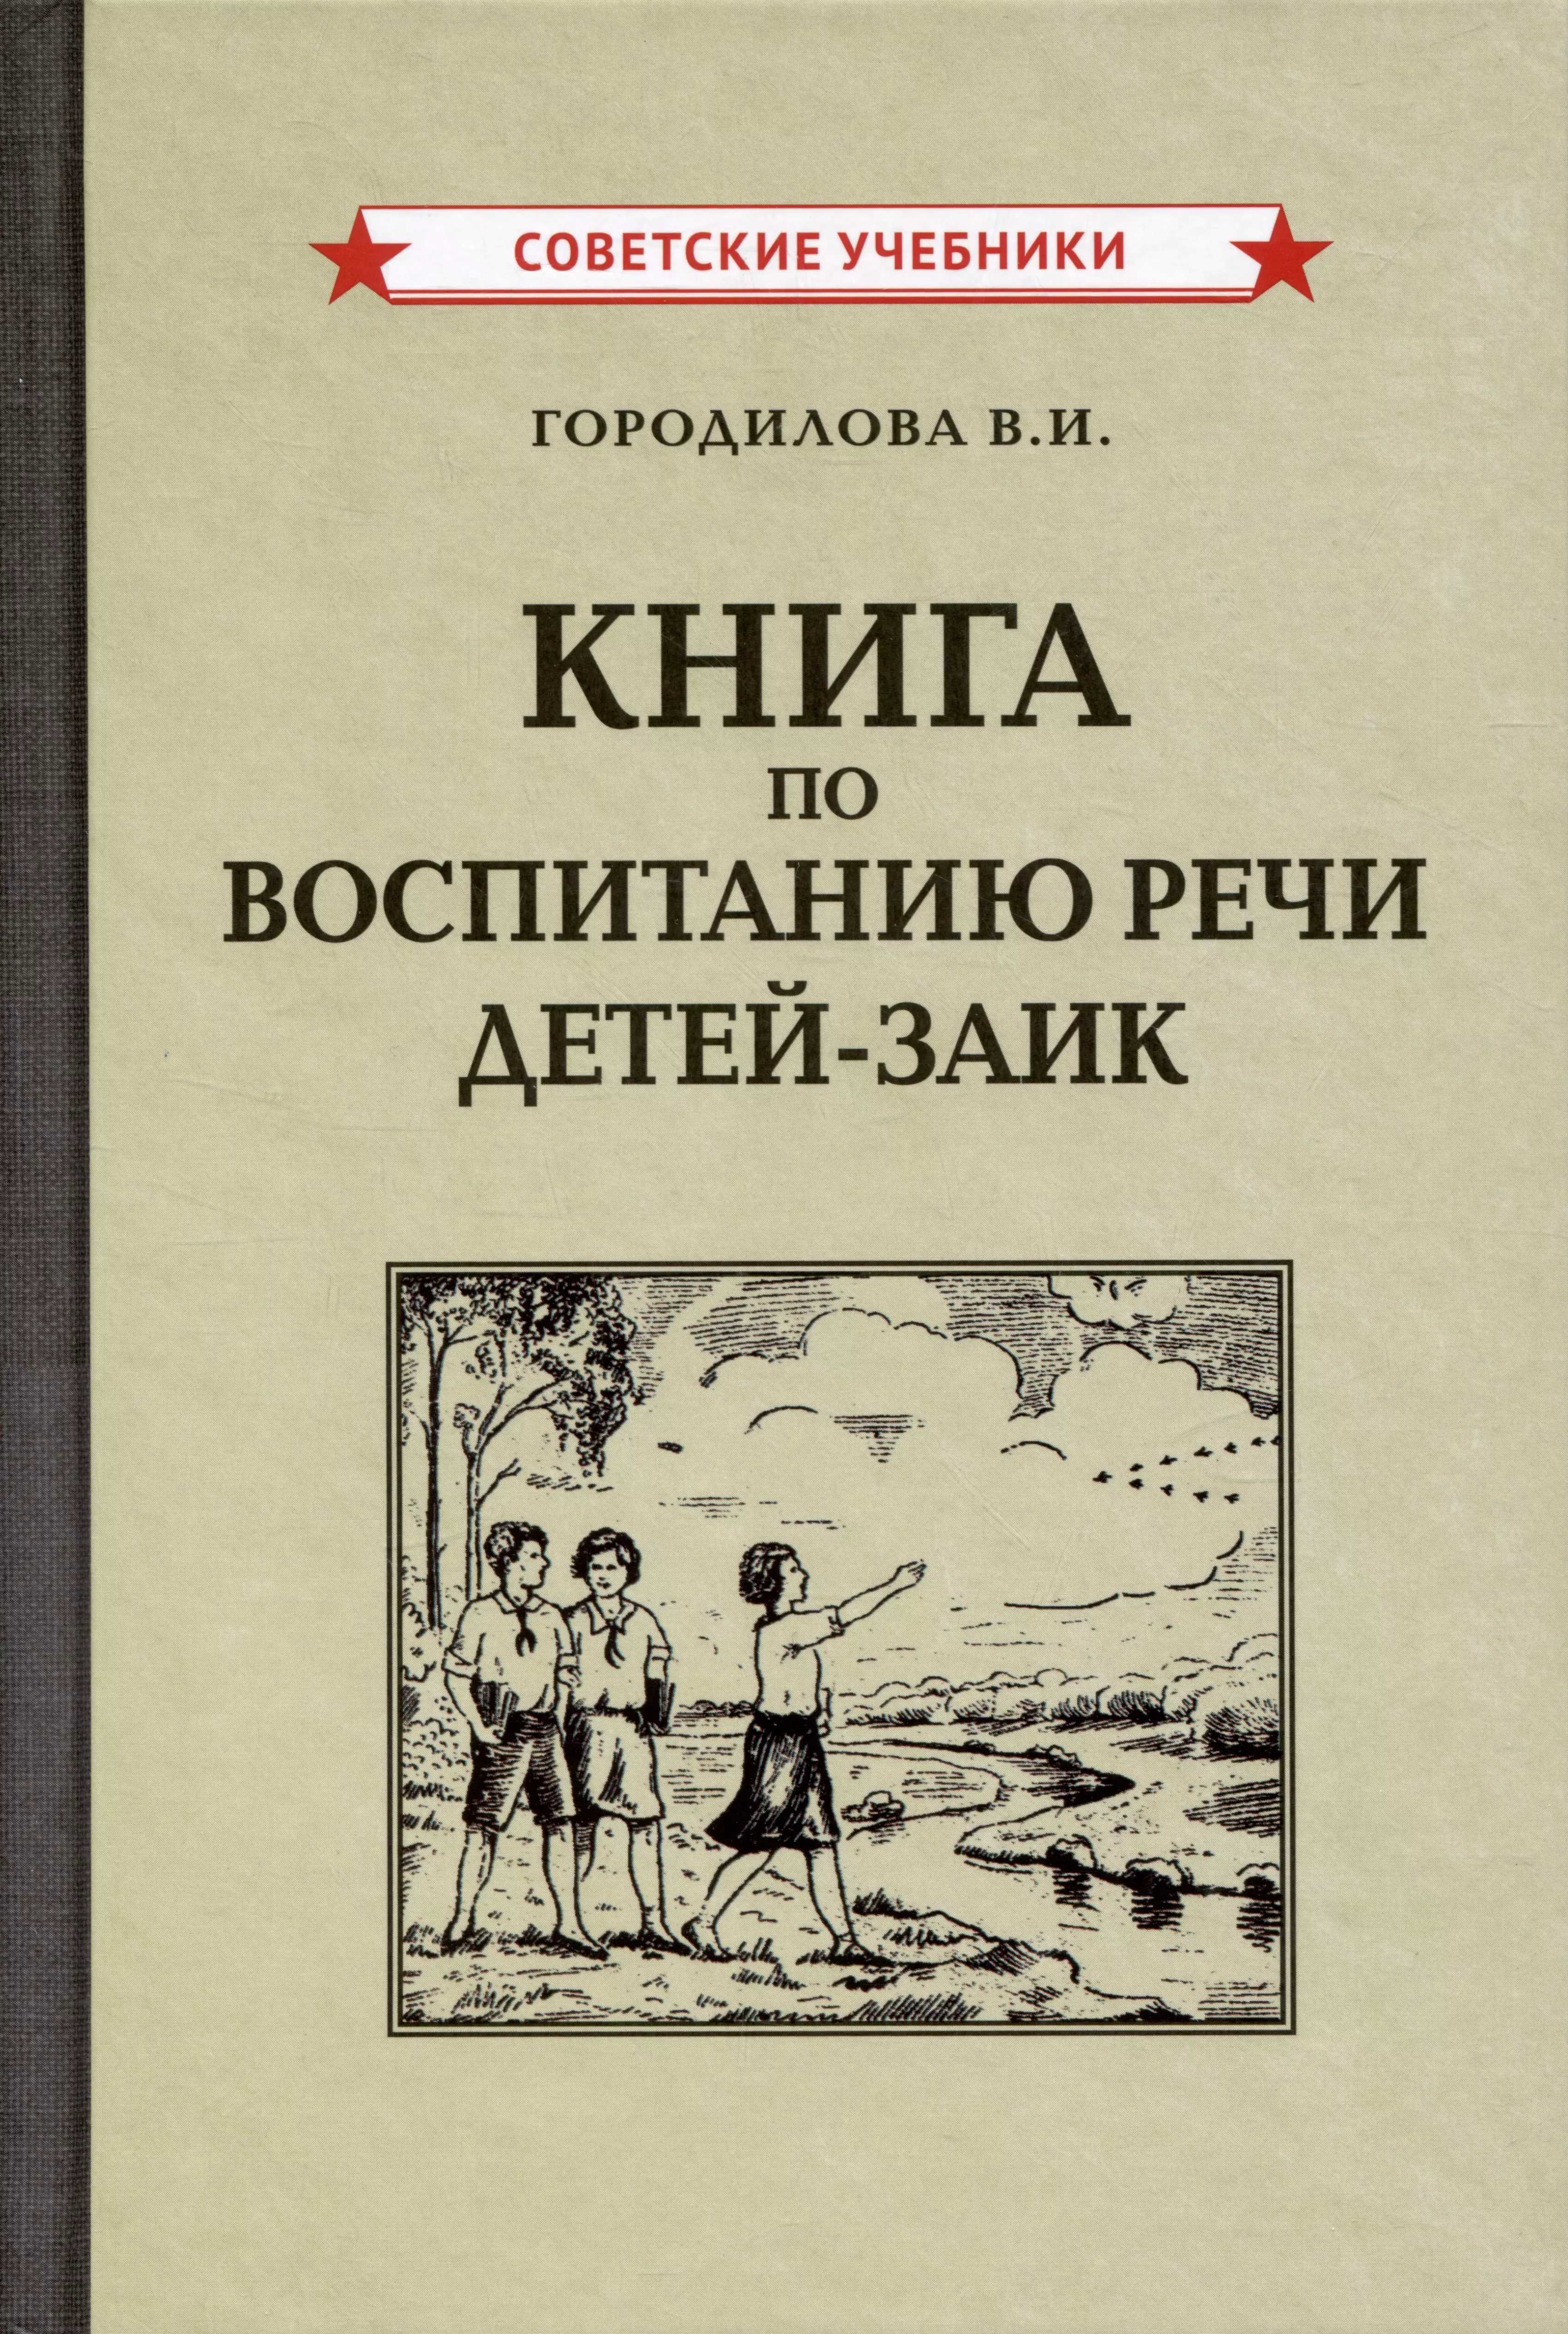 Городилова Вера Ивановна - Книга по воспитанию речи детей-заик [1936]